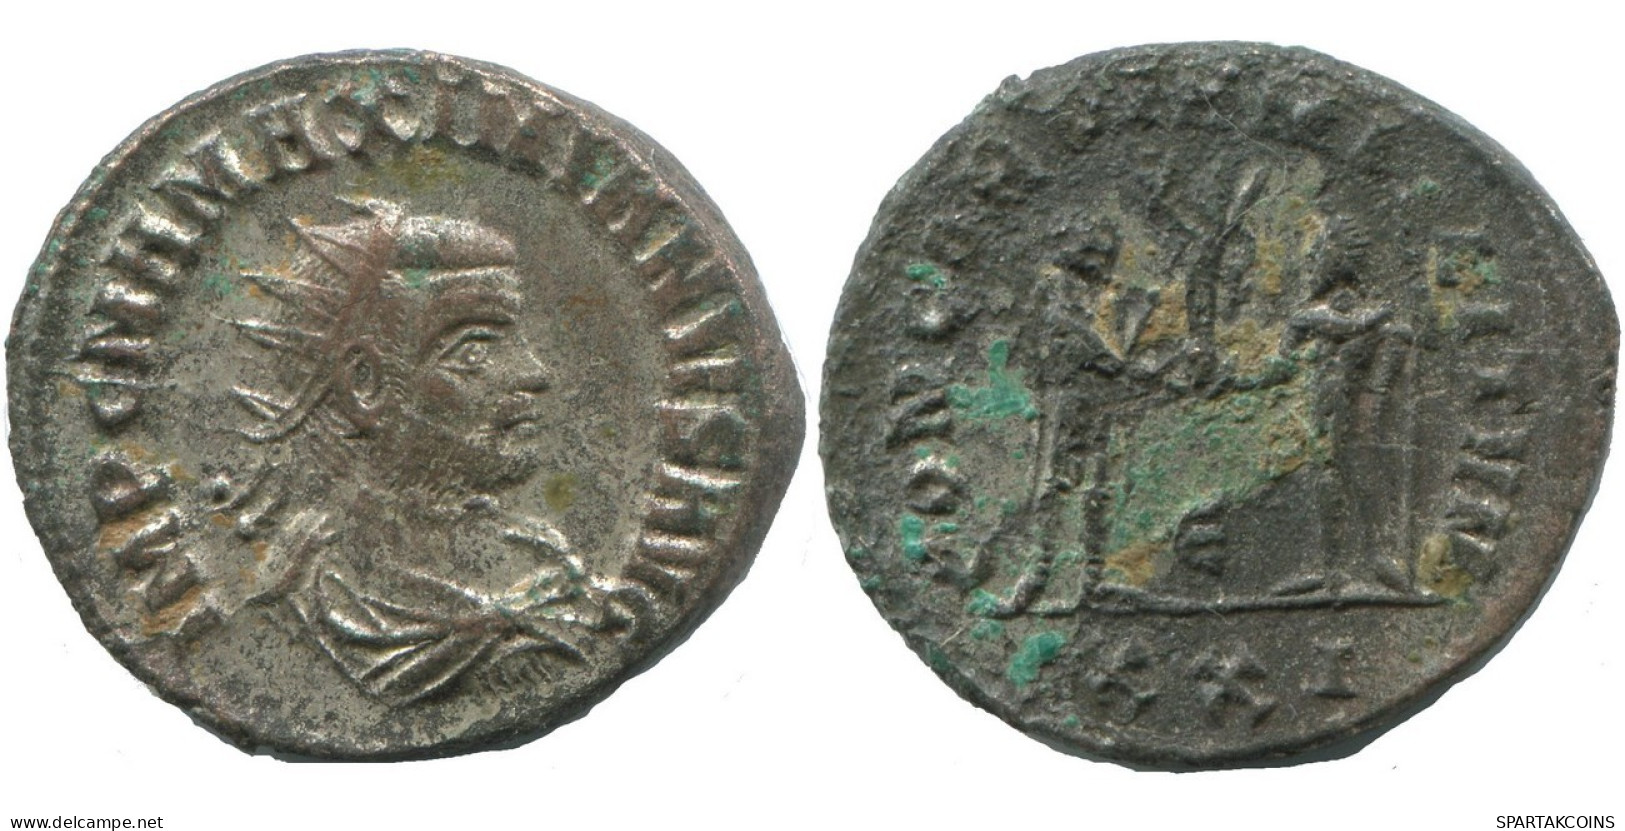 MAXIMIANUS CYZICUS E XXI AD293 SILVERED LATE ROMAN COIN 4.1g/22mm #ANT2671.41.U.A - La Tetrarchía Y Constantino I El Magno (284 / 307)